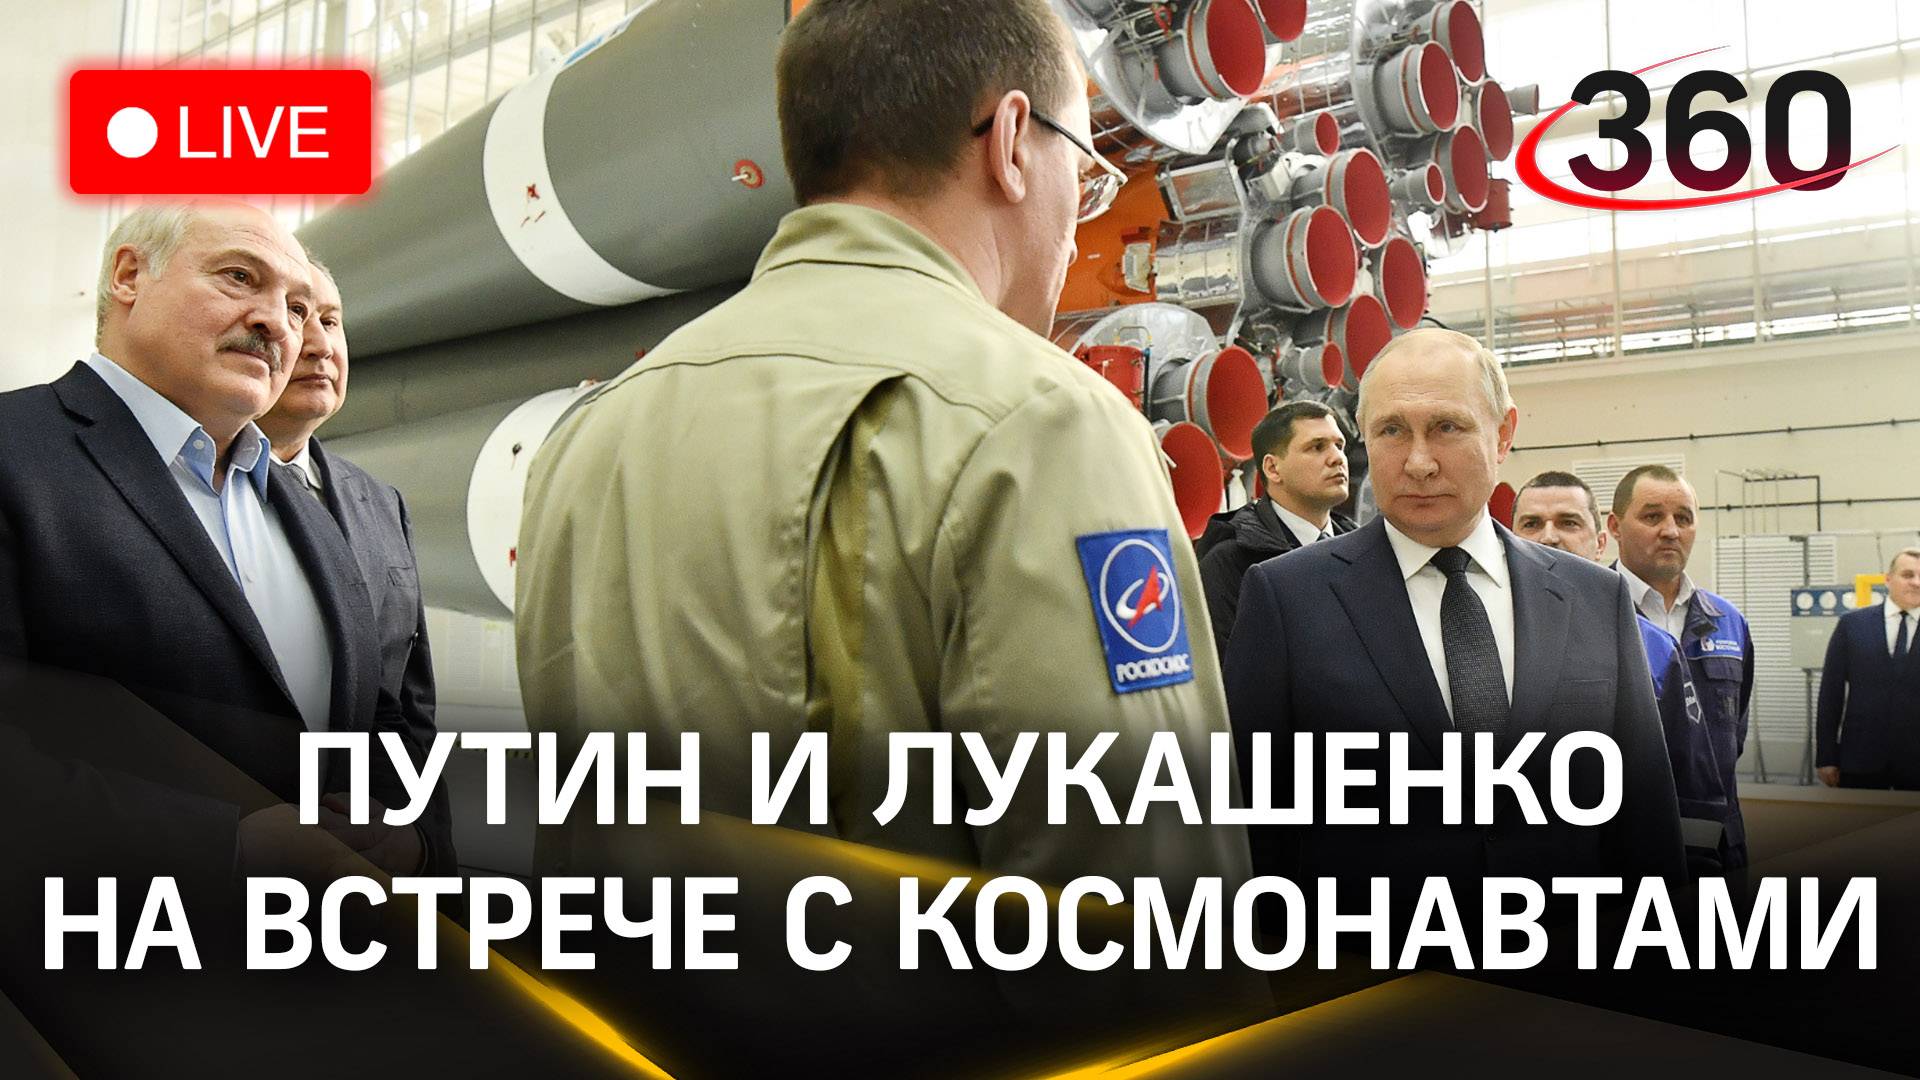 Путин и Лукашенко проводят встречу с космонавтами | Прямая трансляция